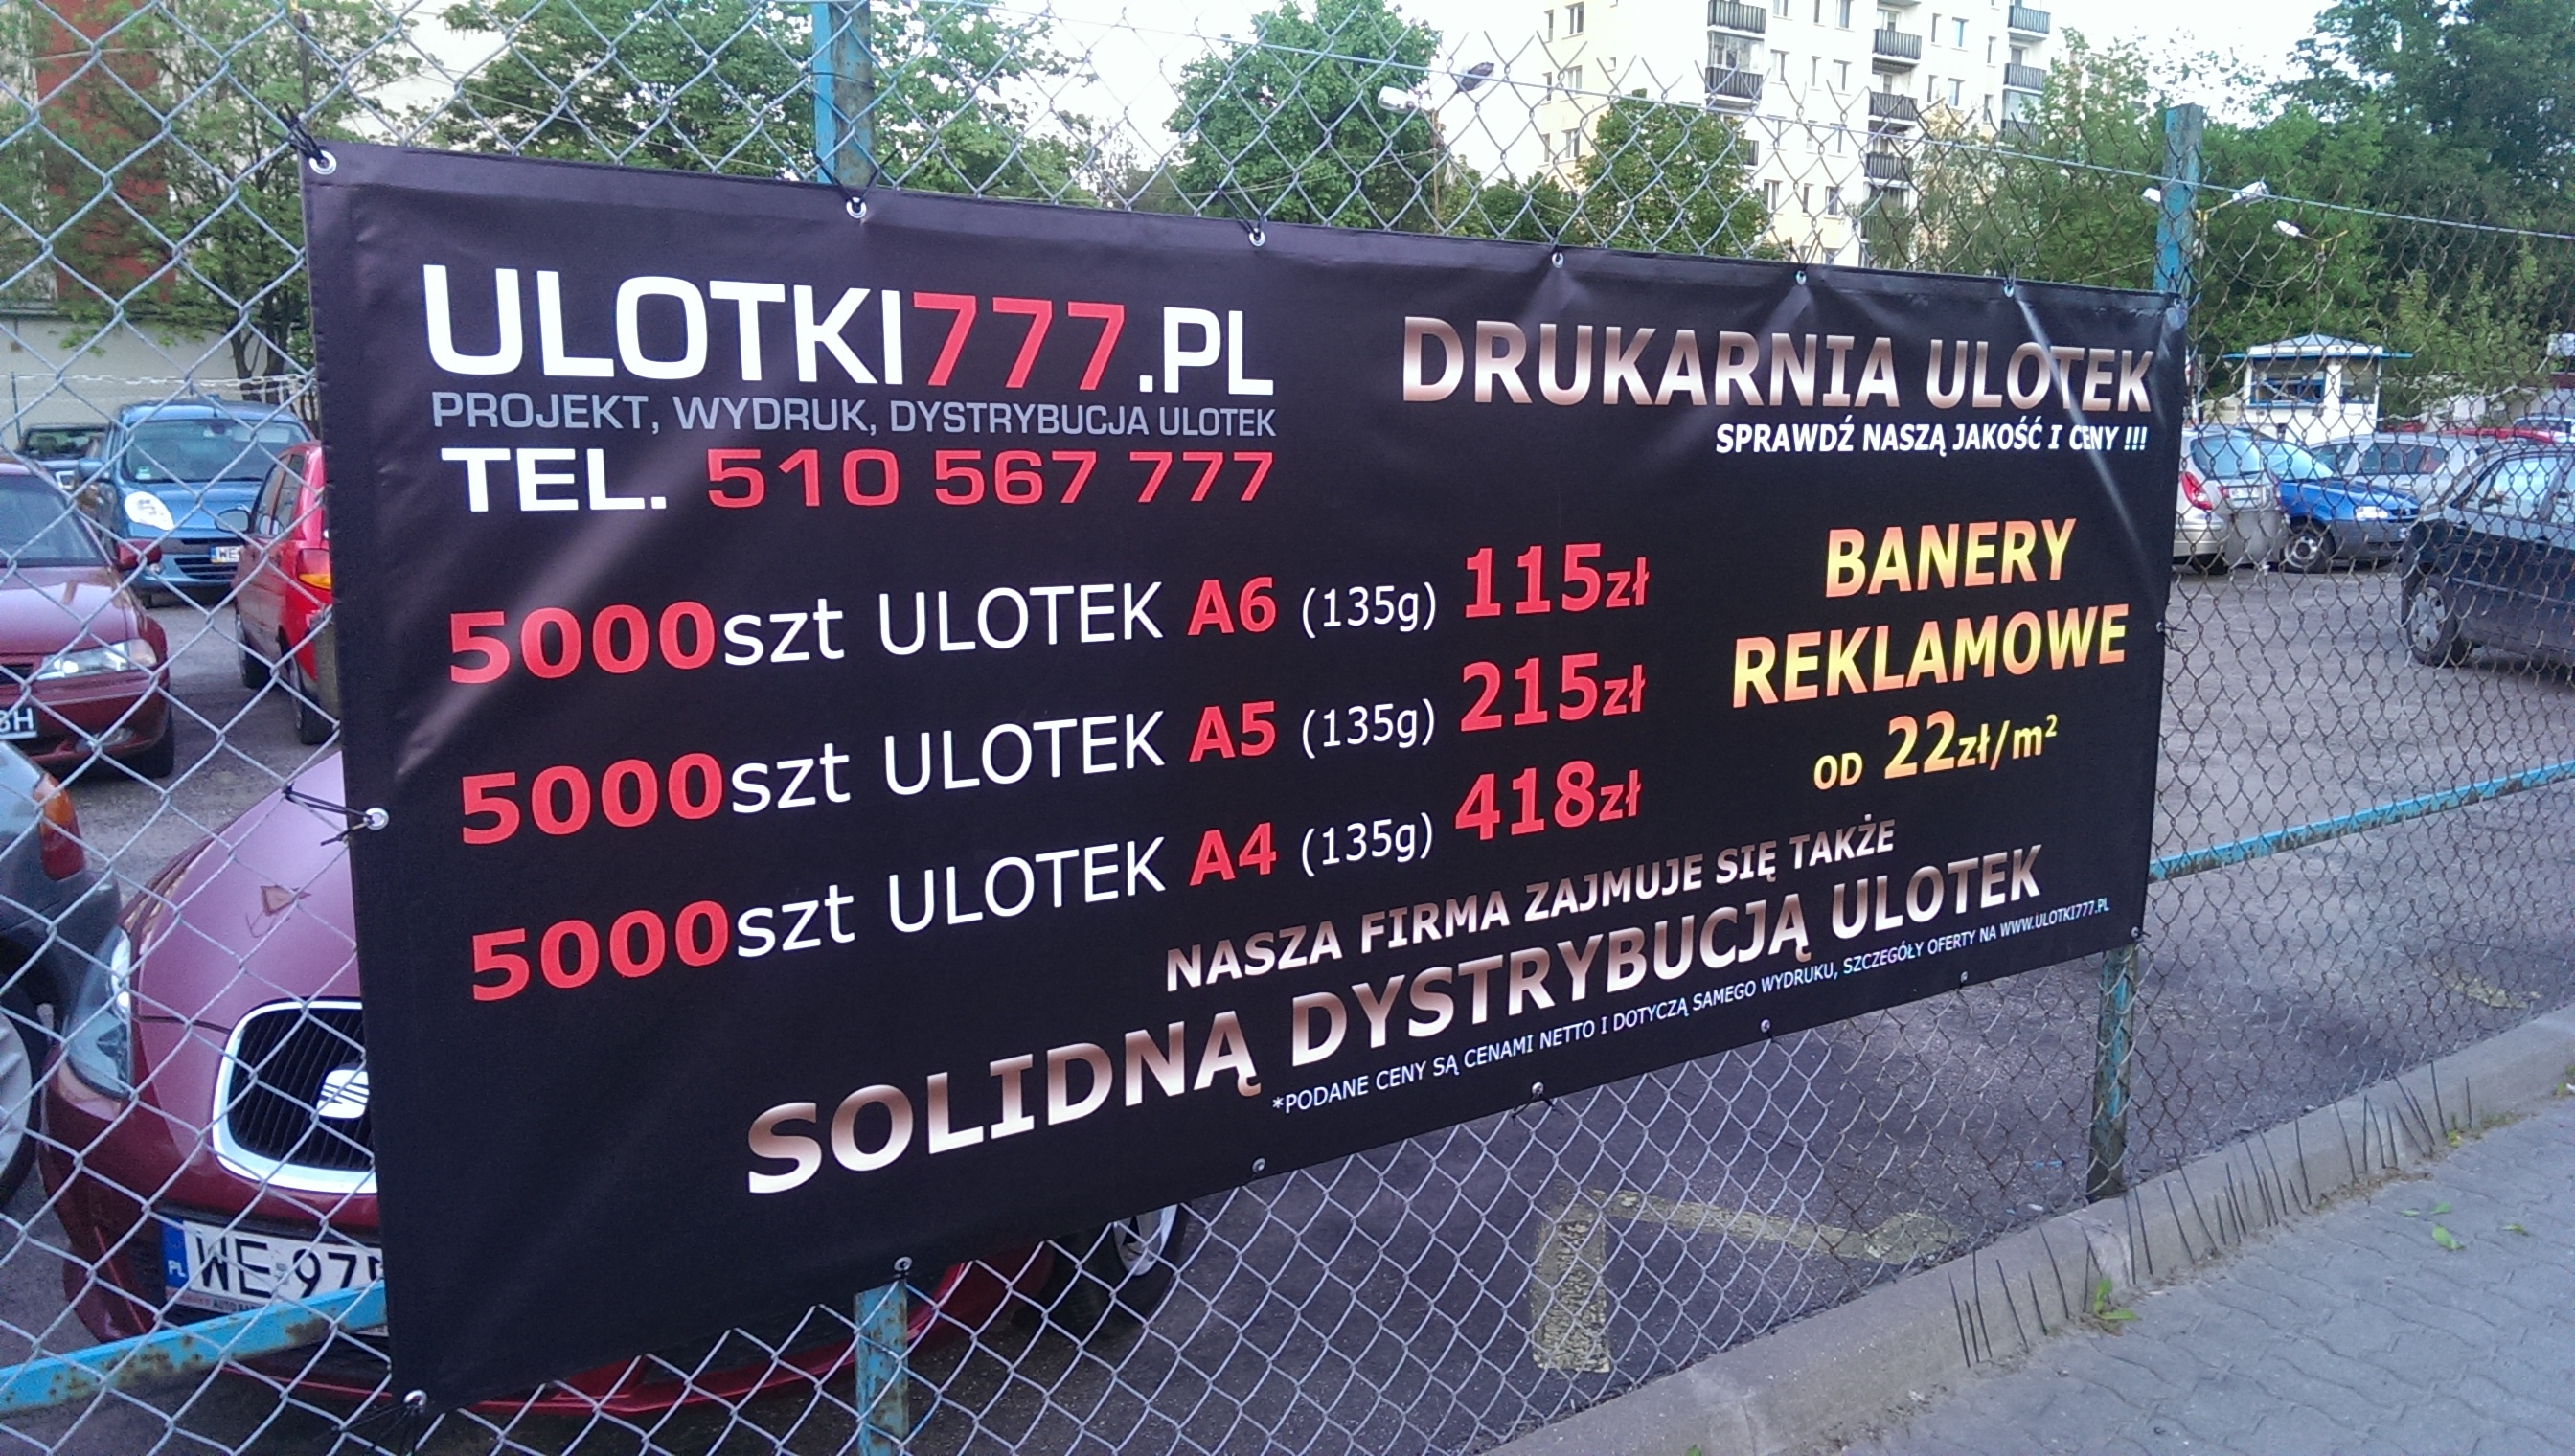 baner reklamowy na płocie w Warszawie